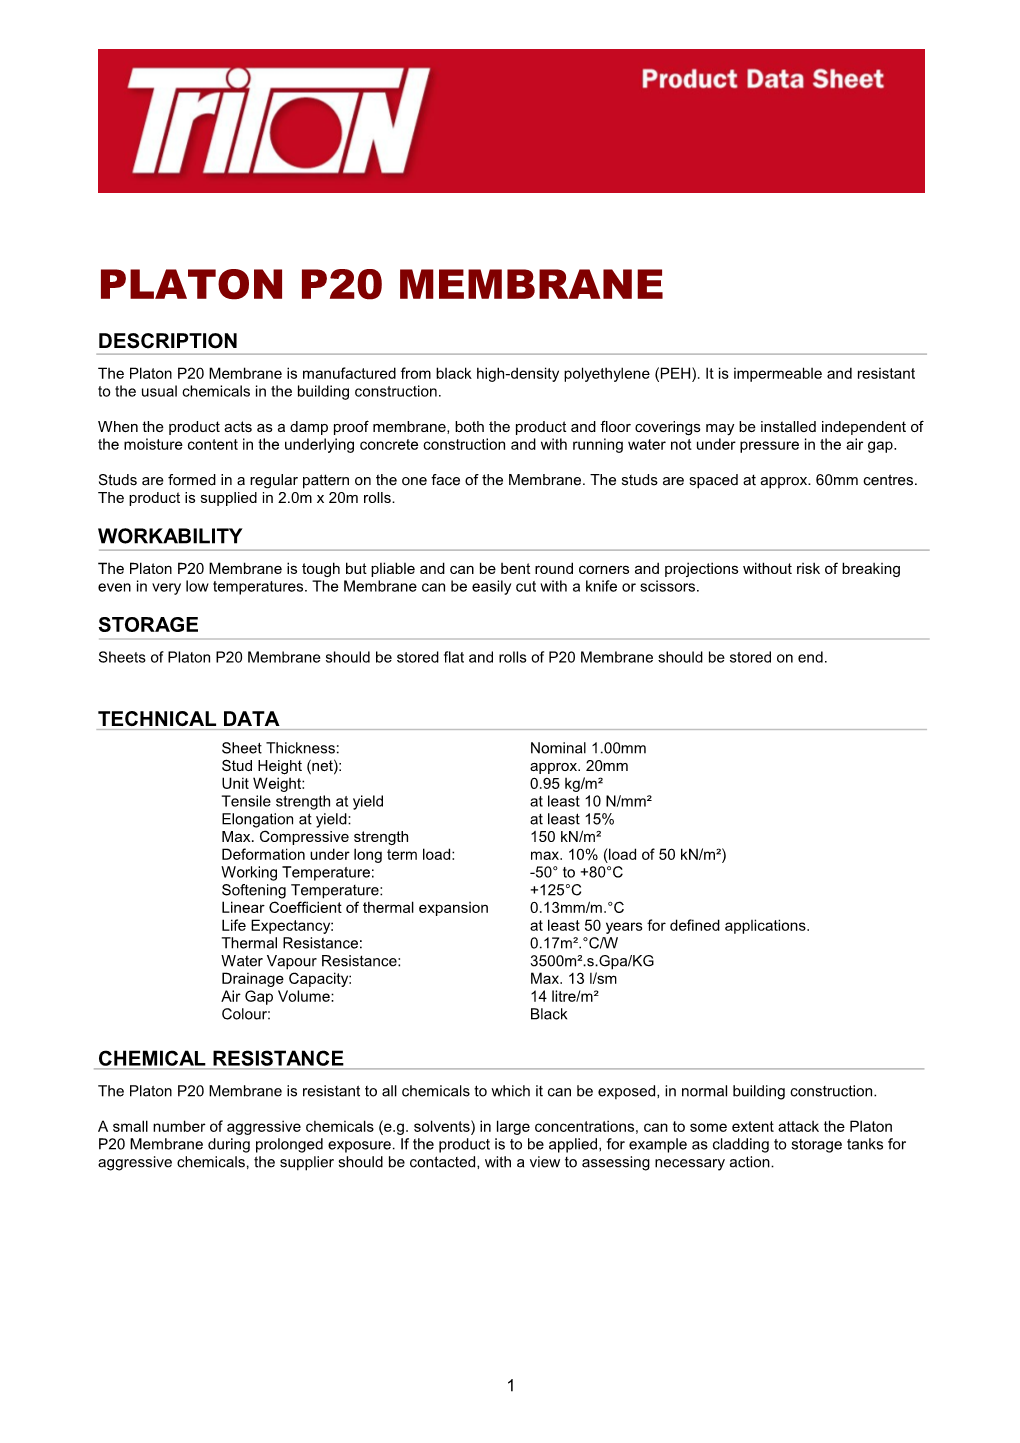 Platon P20 Membrane